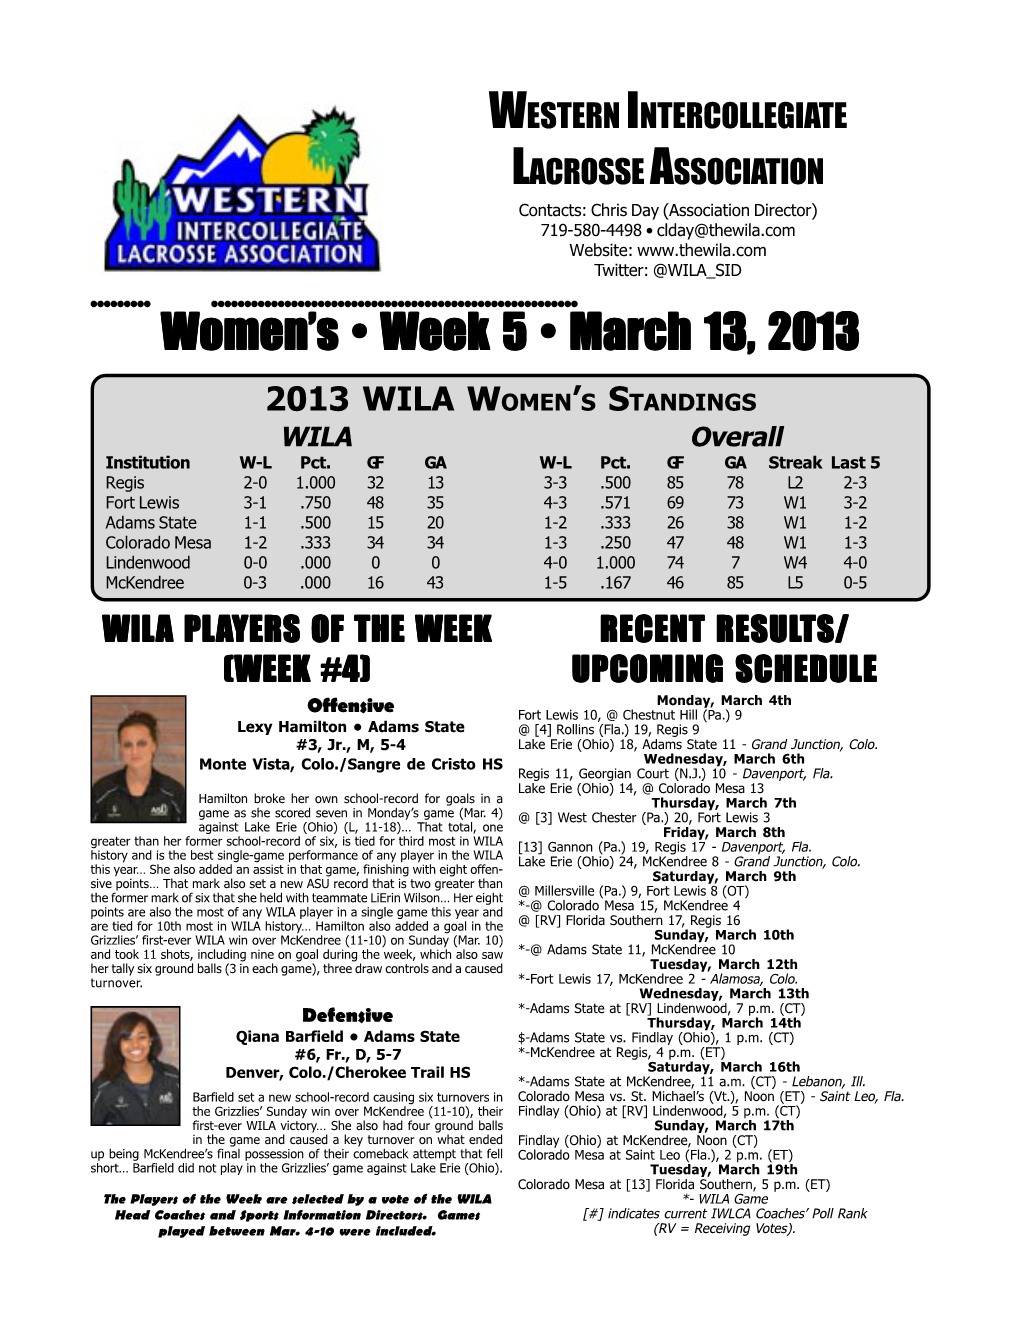 Women's • Week 5 • March 13, 2013